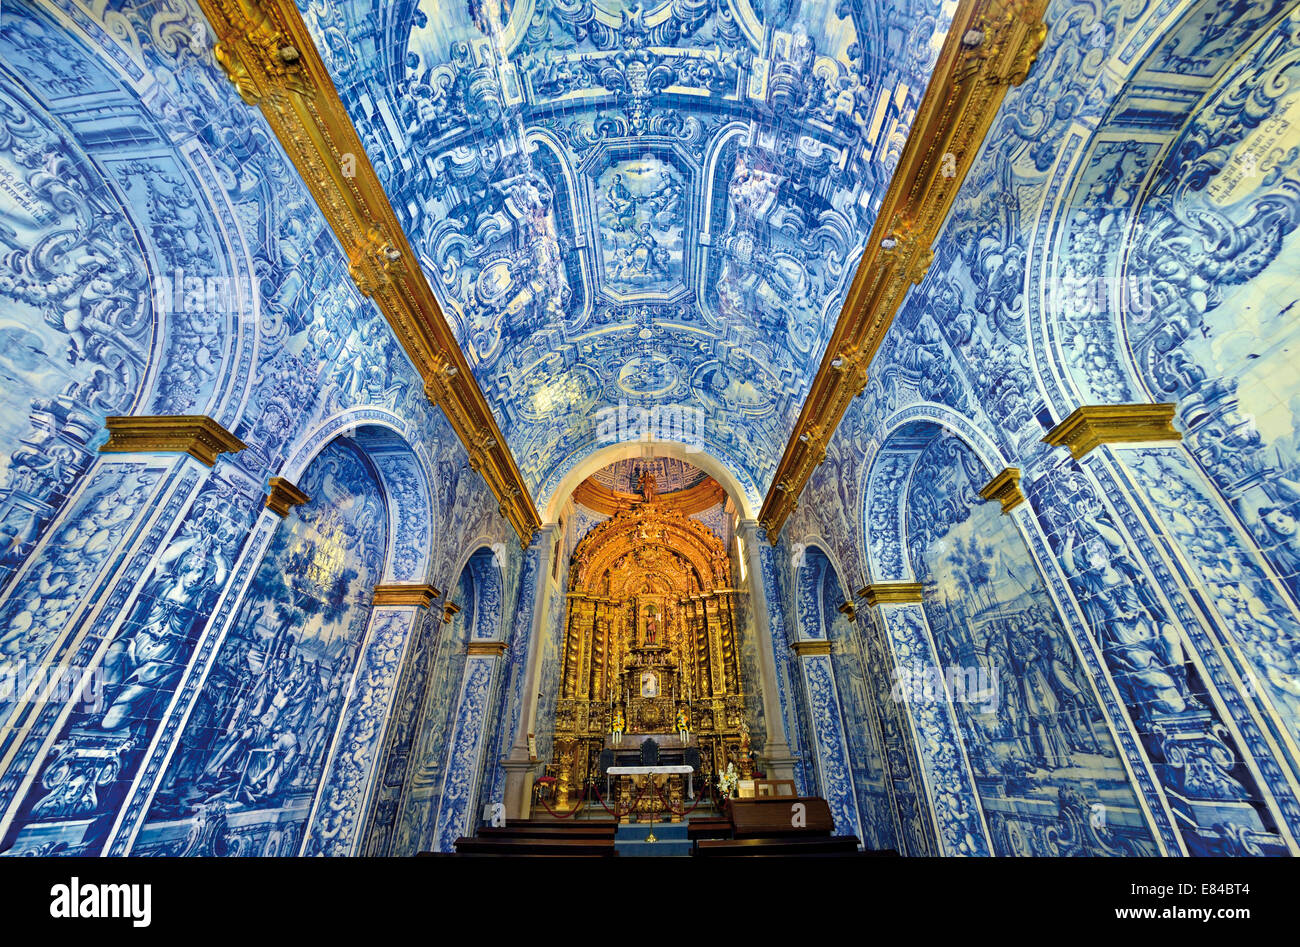 Le Portugal, l'Algarve : carreaux historique dans l'église de Sao Lourenco dans San Colombano Banque D'Images